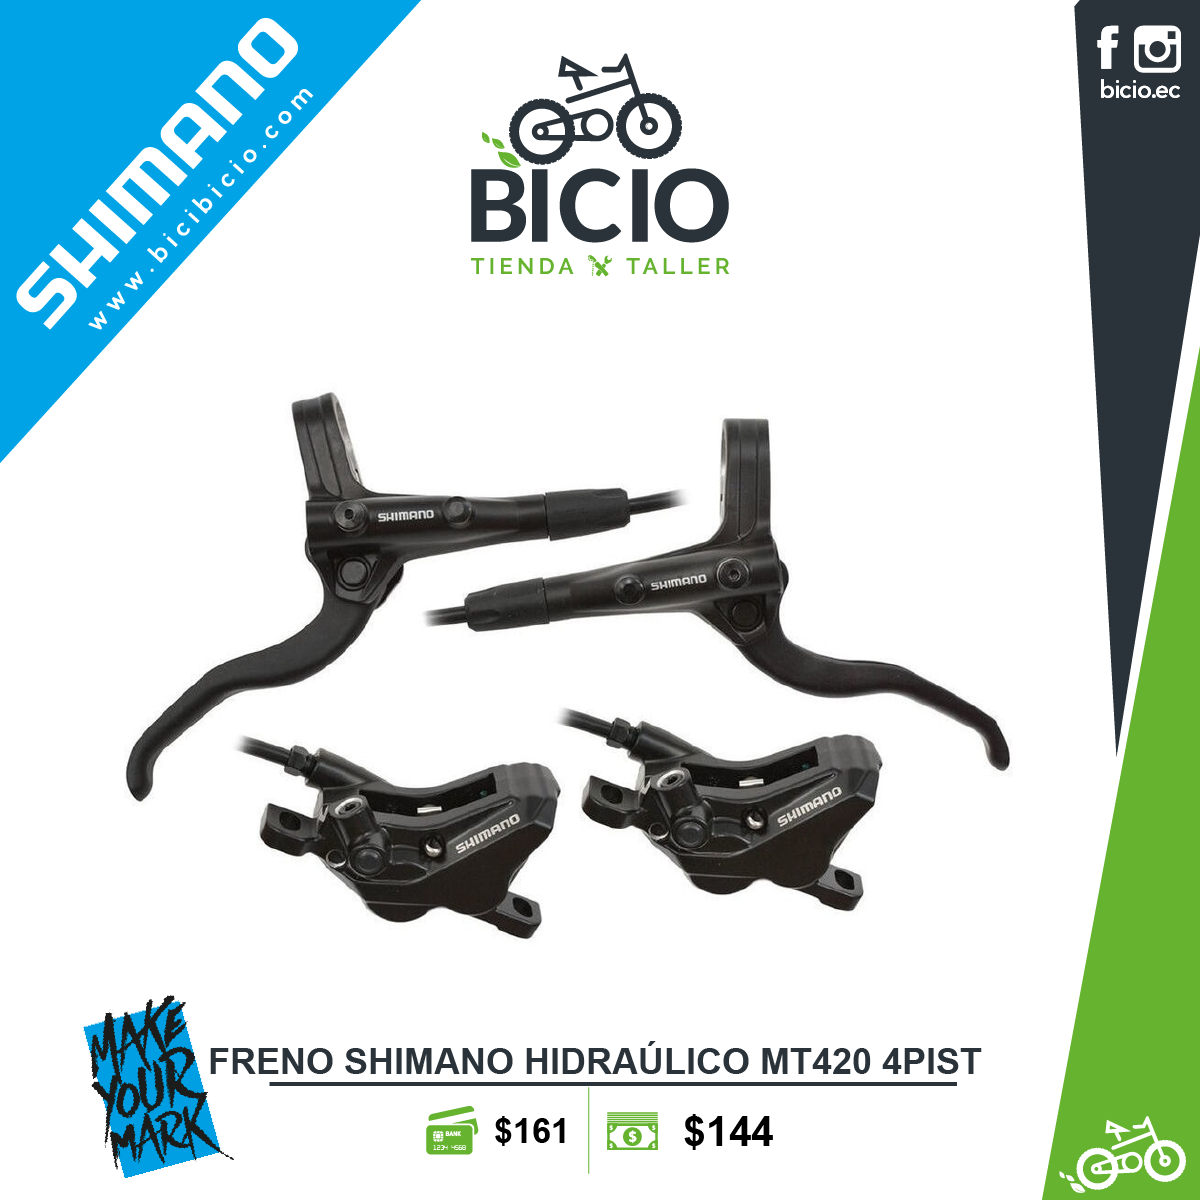 Frenos Hidráulicos Shimano Altus - Bicio tienda - taller de bicicletas